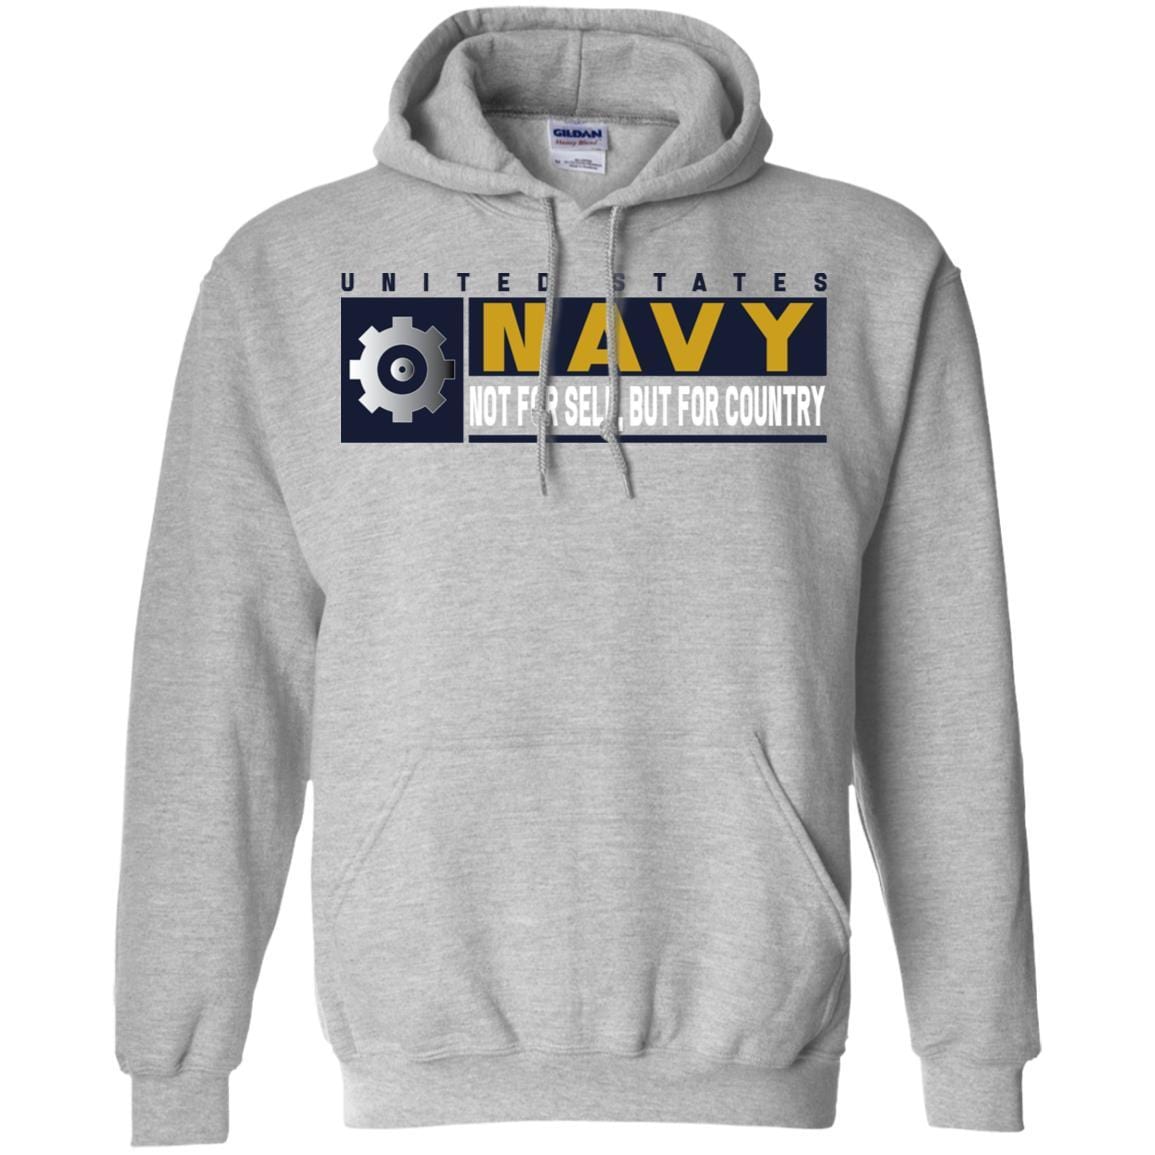 U.S Navy Engineman Navy EN- Not for self Long Sleeve - Pullover Hoodie-TShirt-Navy-Veterans Nation